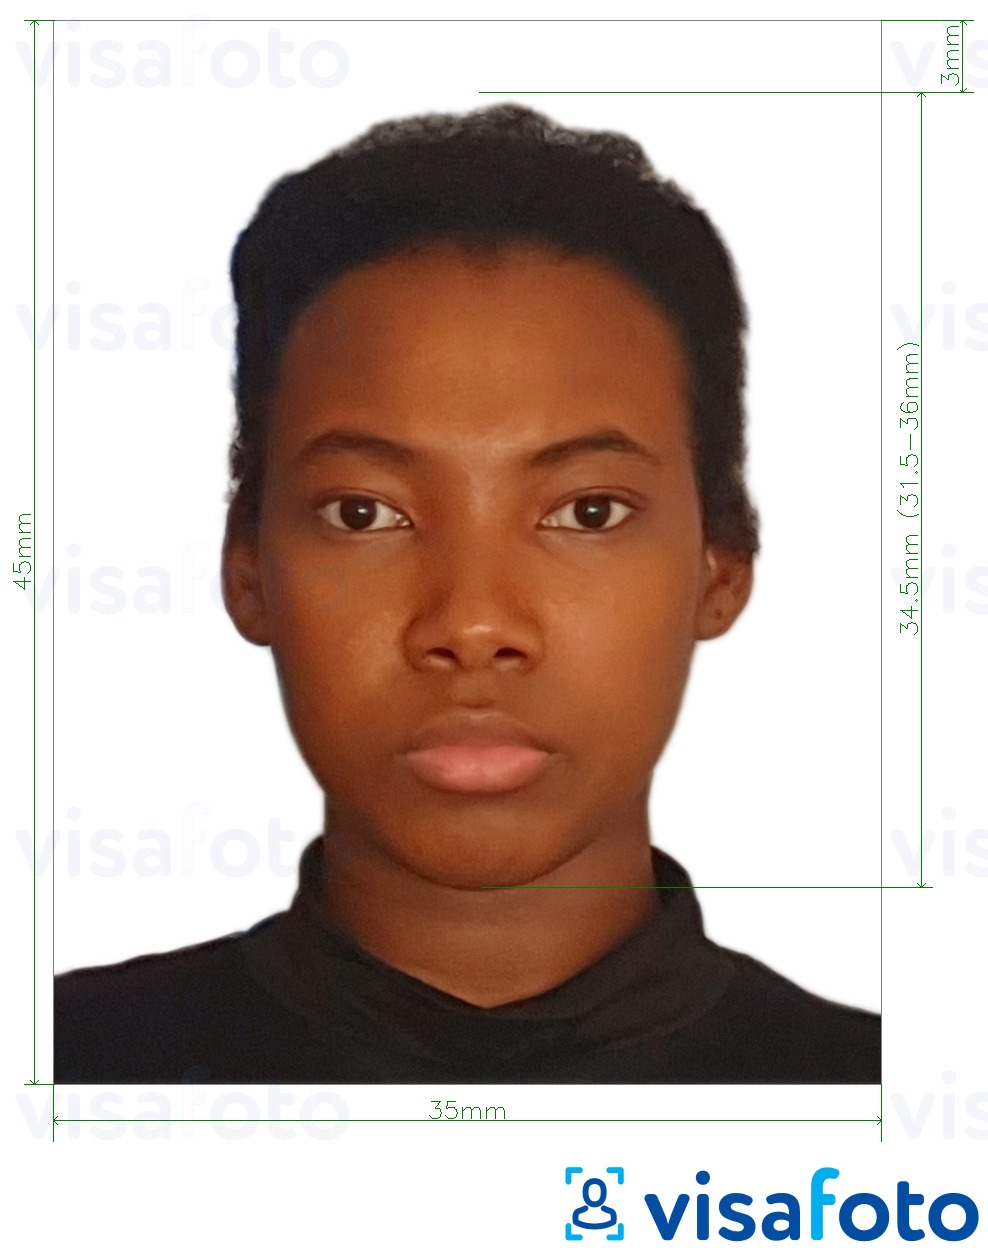 Exemplo de foto para Passaporte da República Democrática do Congo 35x45 mm (3,5x4,5 cm) com especificação exata de dimensão